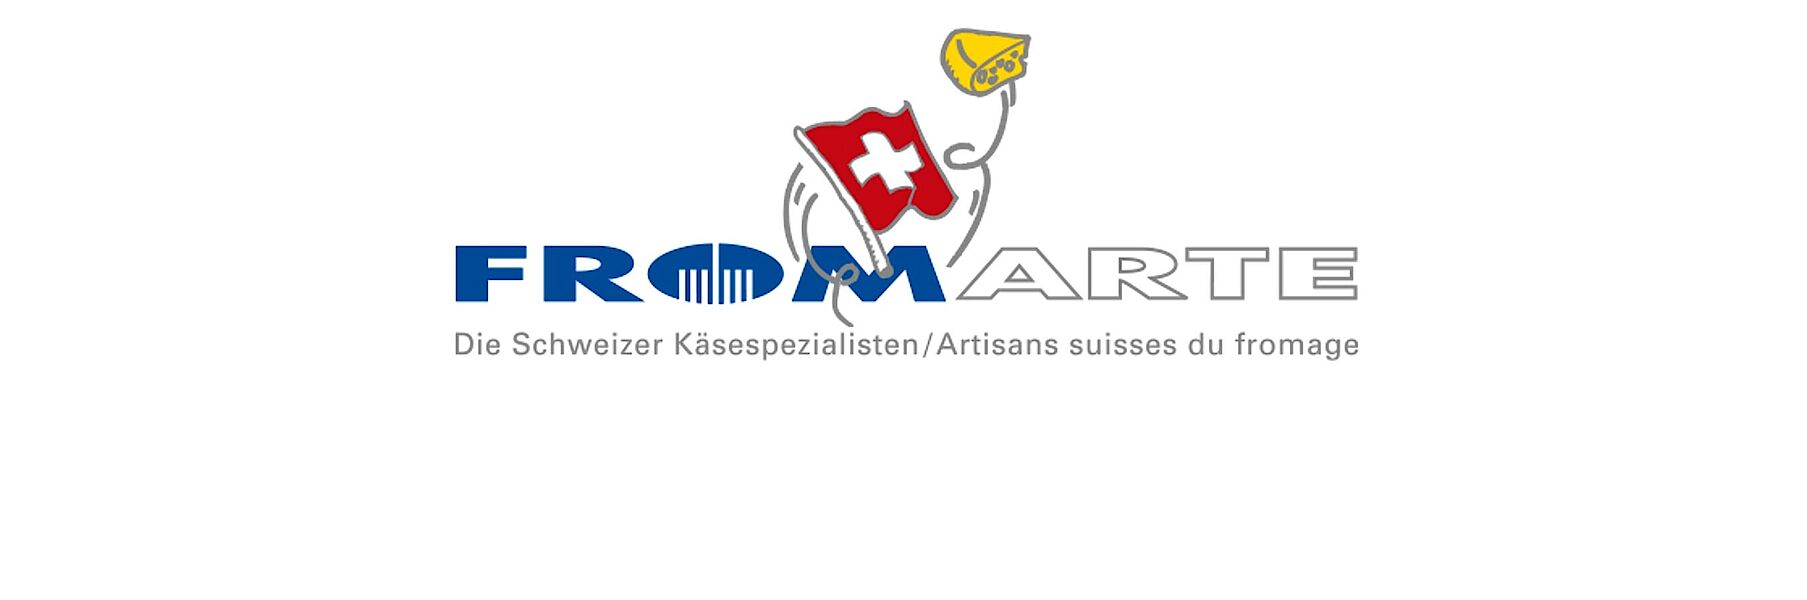 Fromarte ist der Dachverband der Schweizer Käsespezialisten.